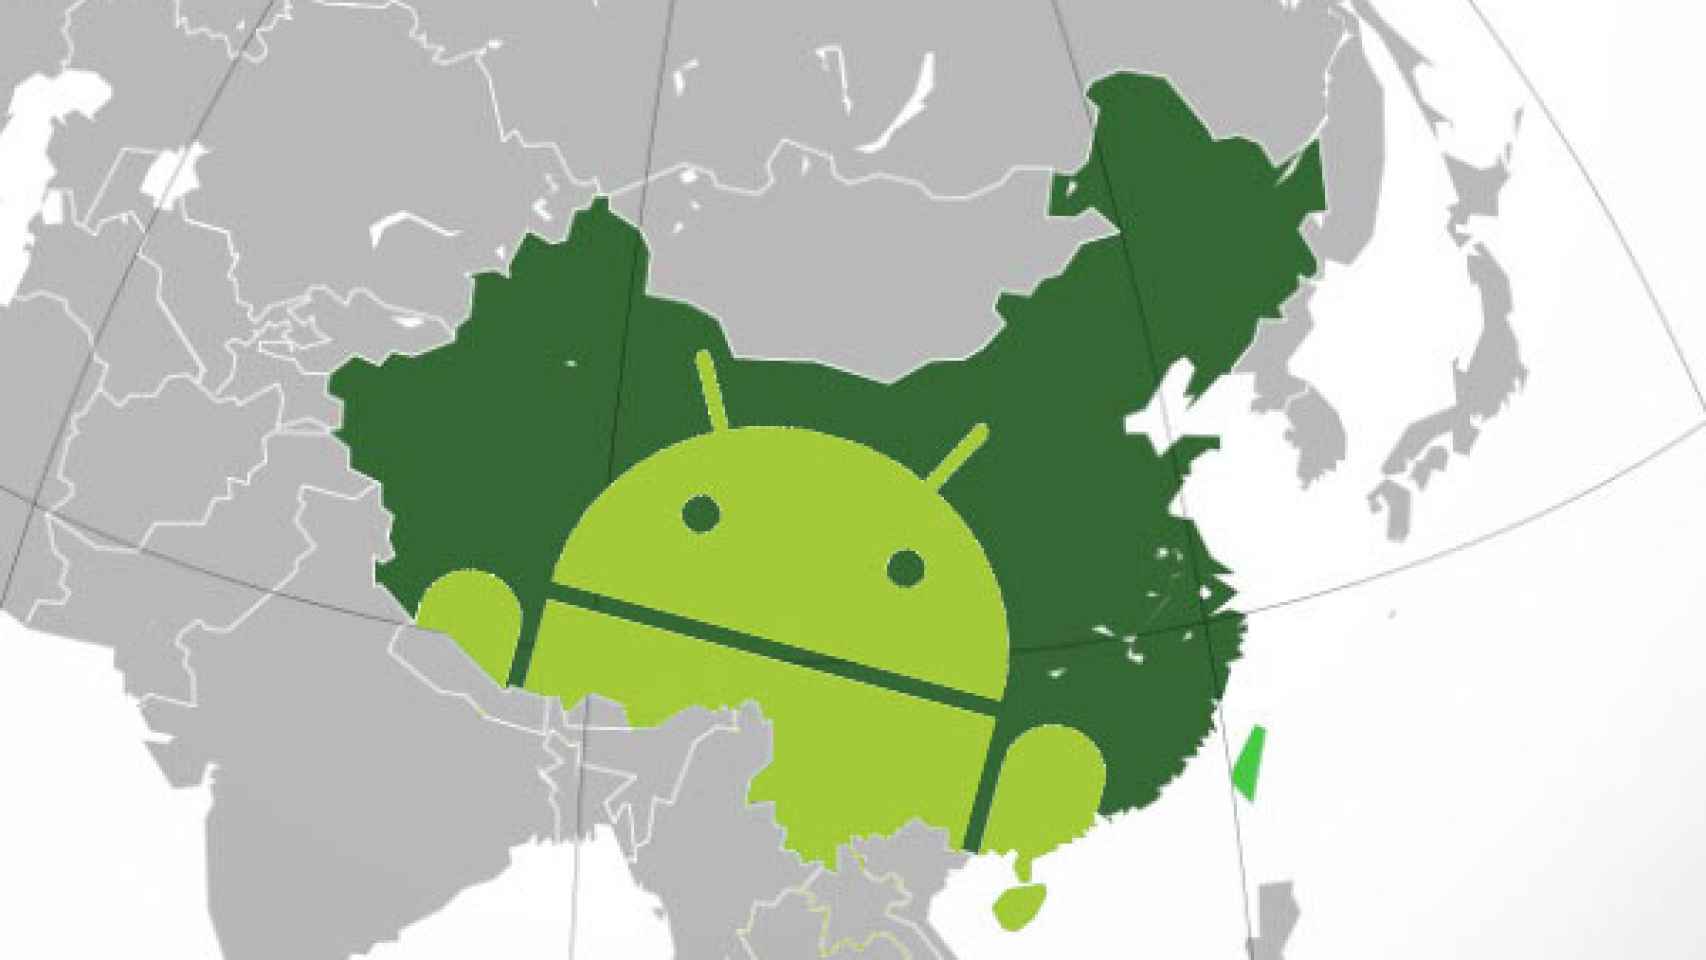 El 40% de los móviles proceden de China